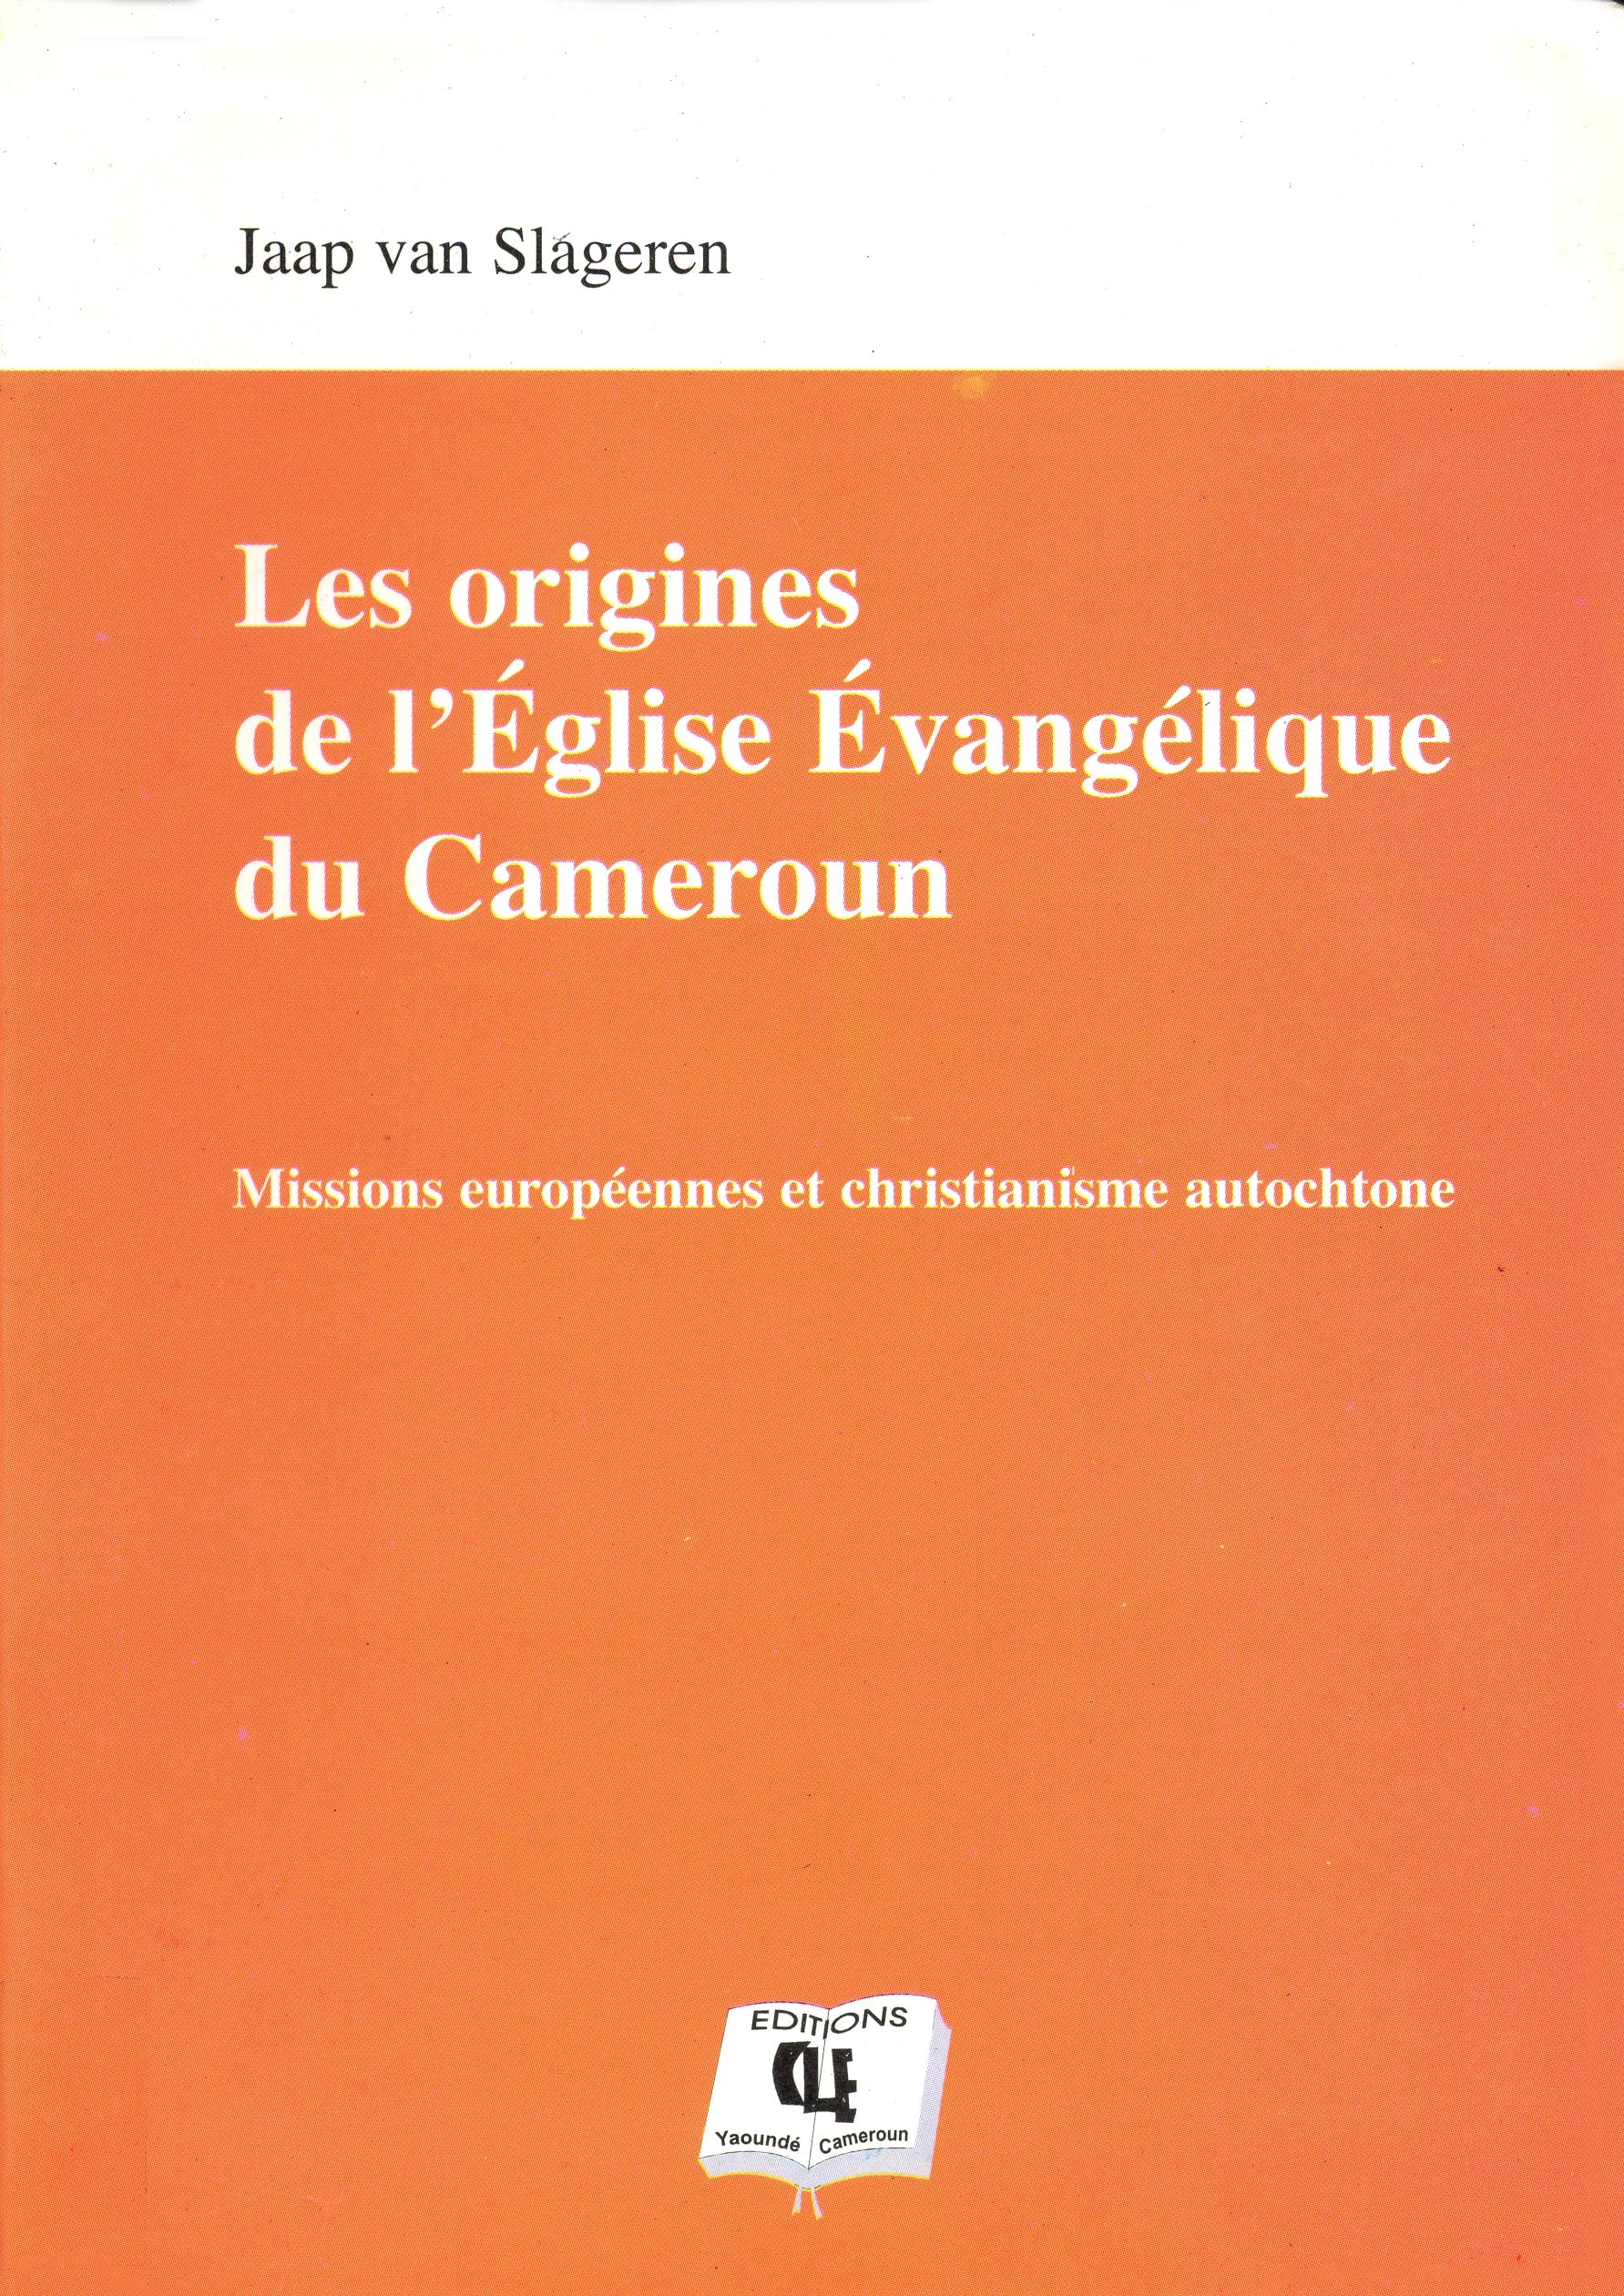 Les origines de l’Église Évangélique du Cameroun